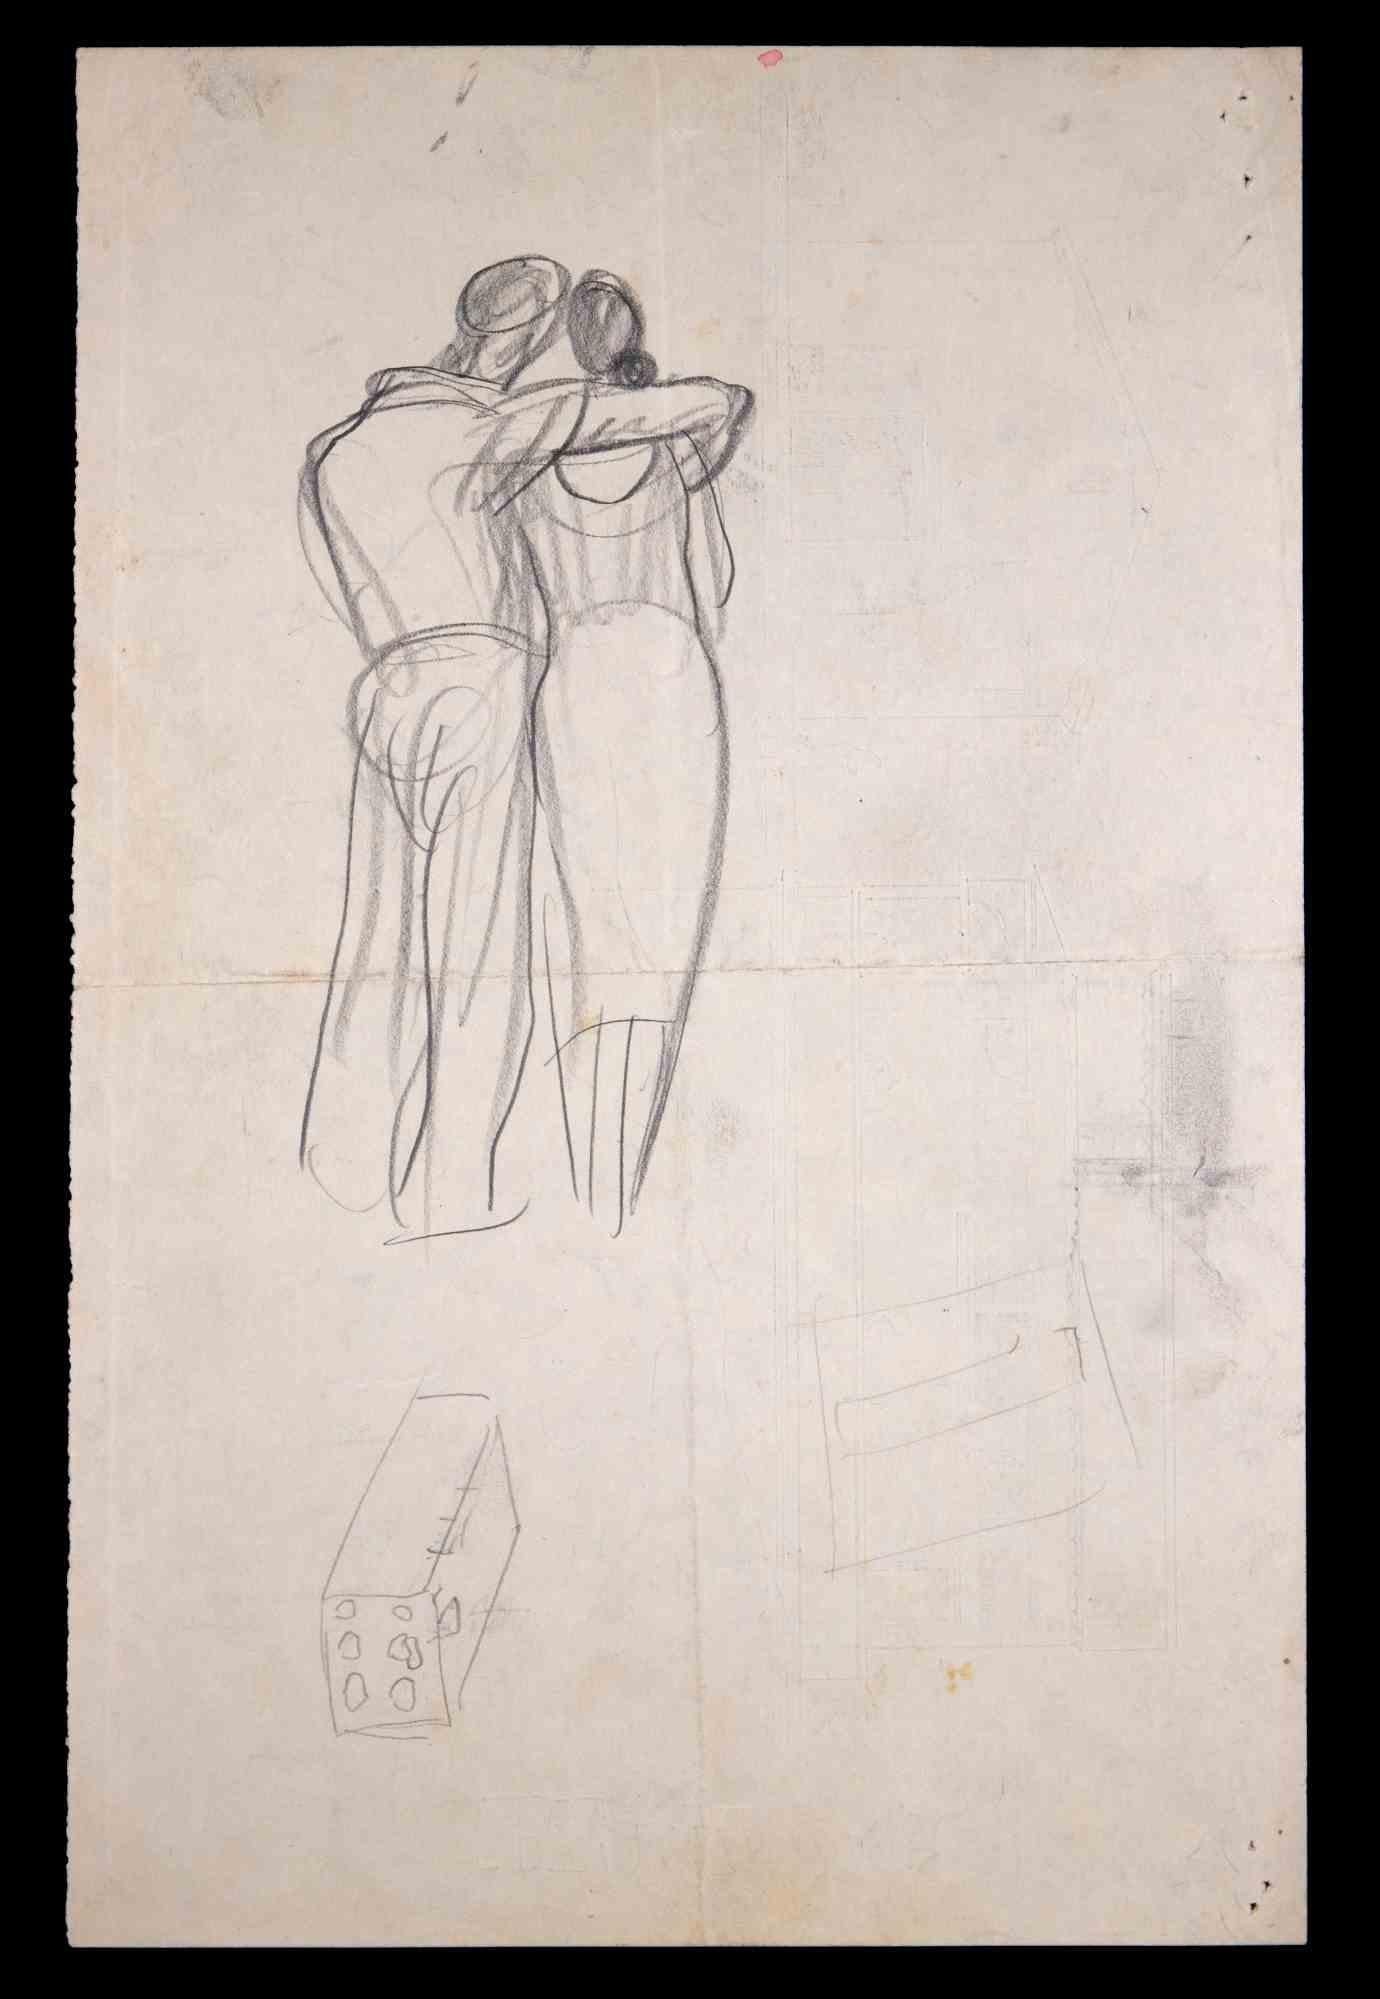 Couple Sketches - dessin original d'un inconnu - milieu du 20ème siècle